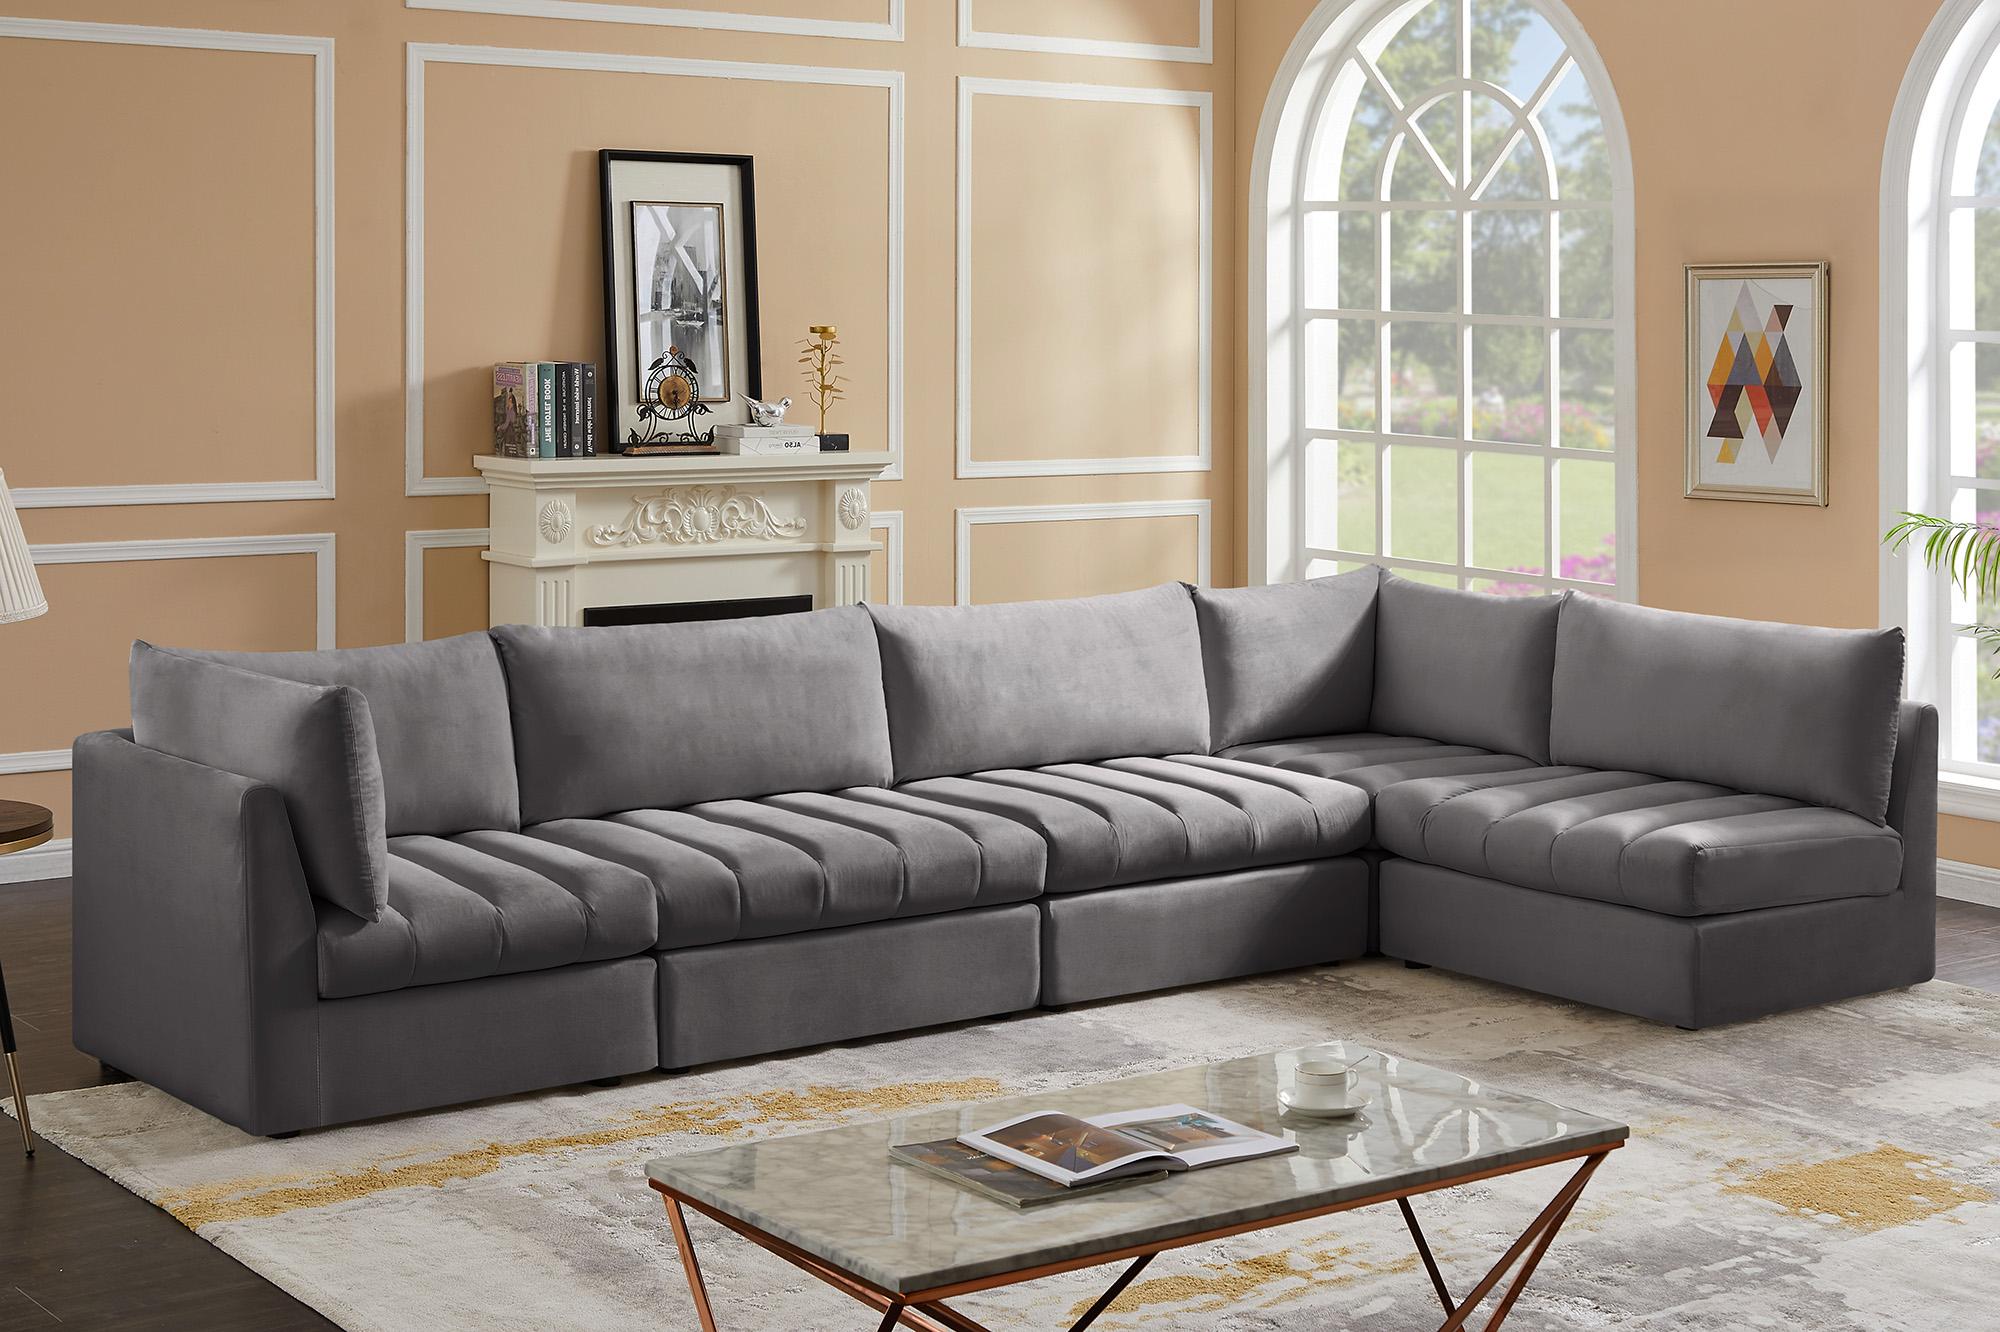 

    
Meridian Furniture JACOB 649Grey-Sec5A Modular Sectional Sofa Gray 649Grey-Sec5A
